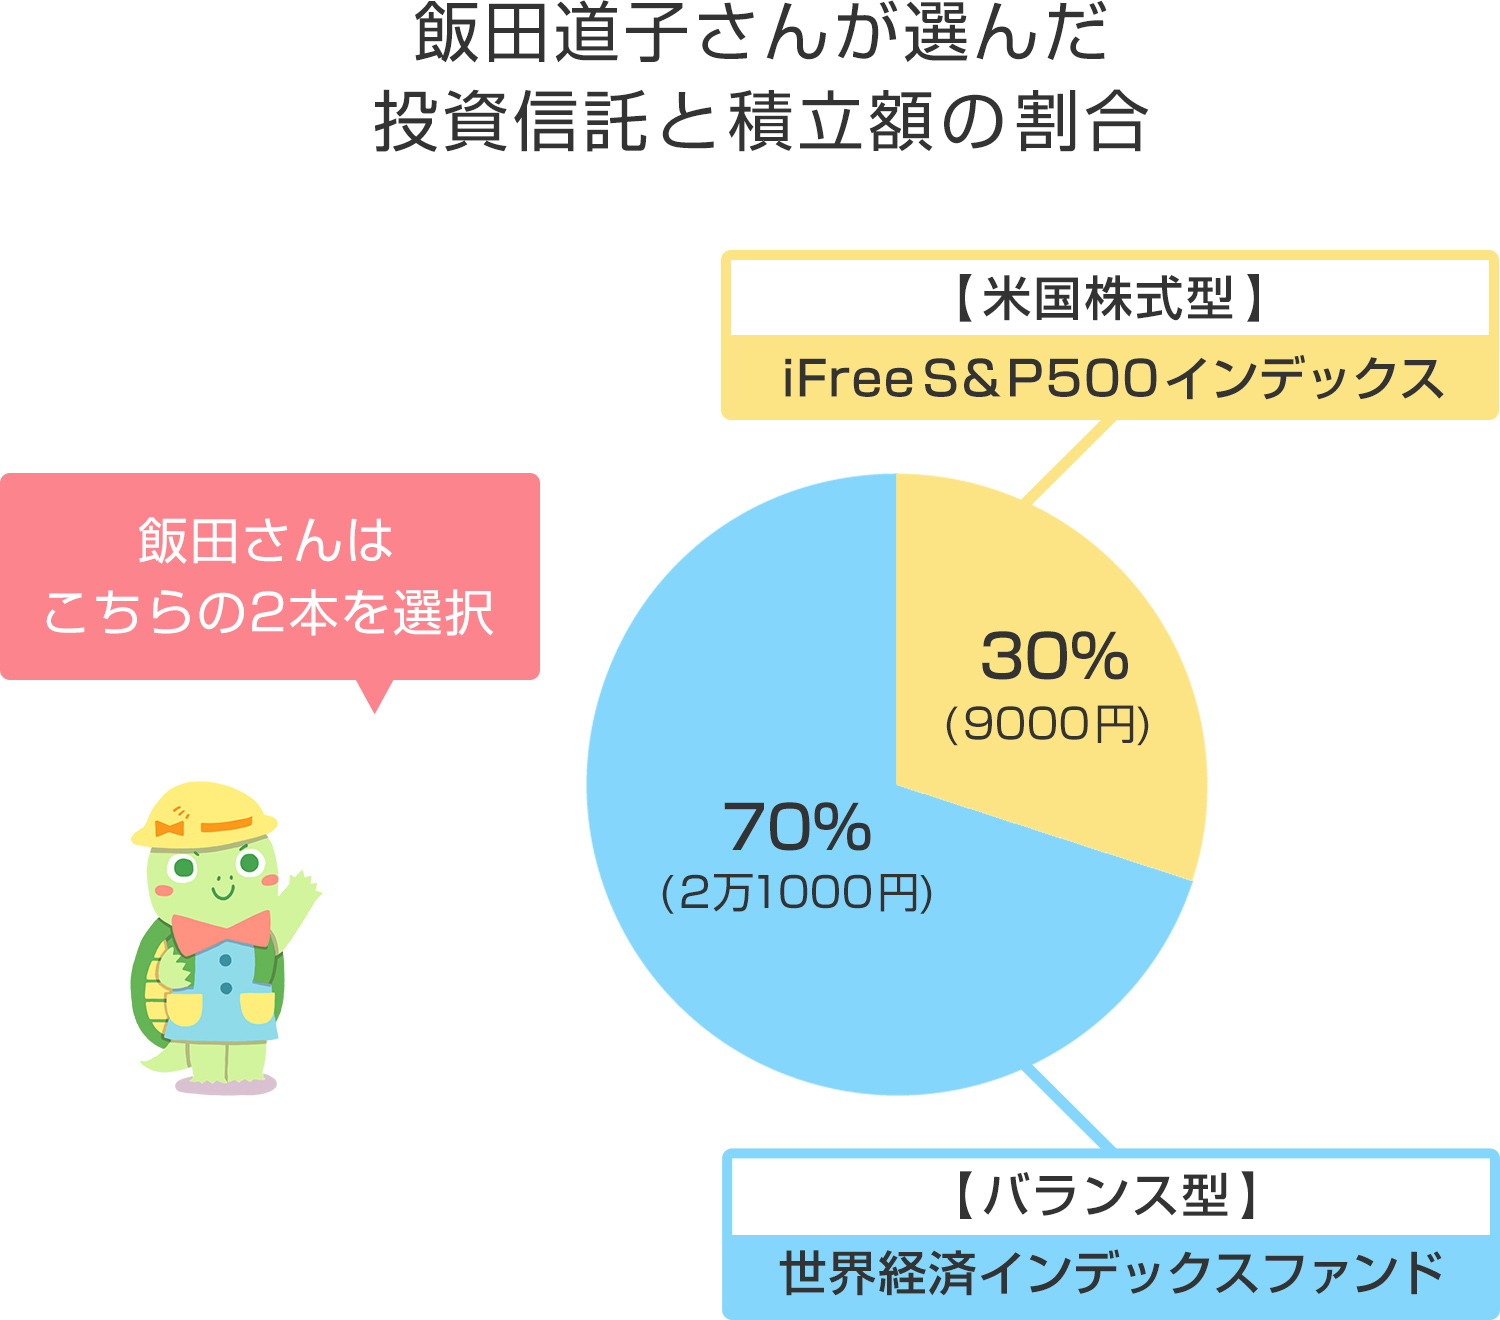 ファイナンシャルプランナー飯田道子さんが選んだ投資信託と積立額の割合